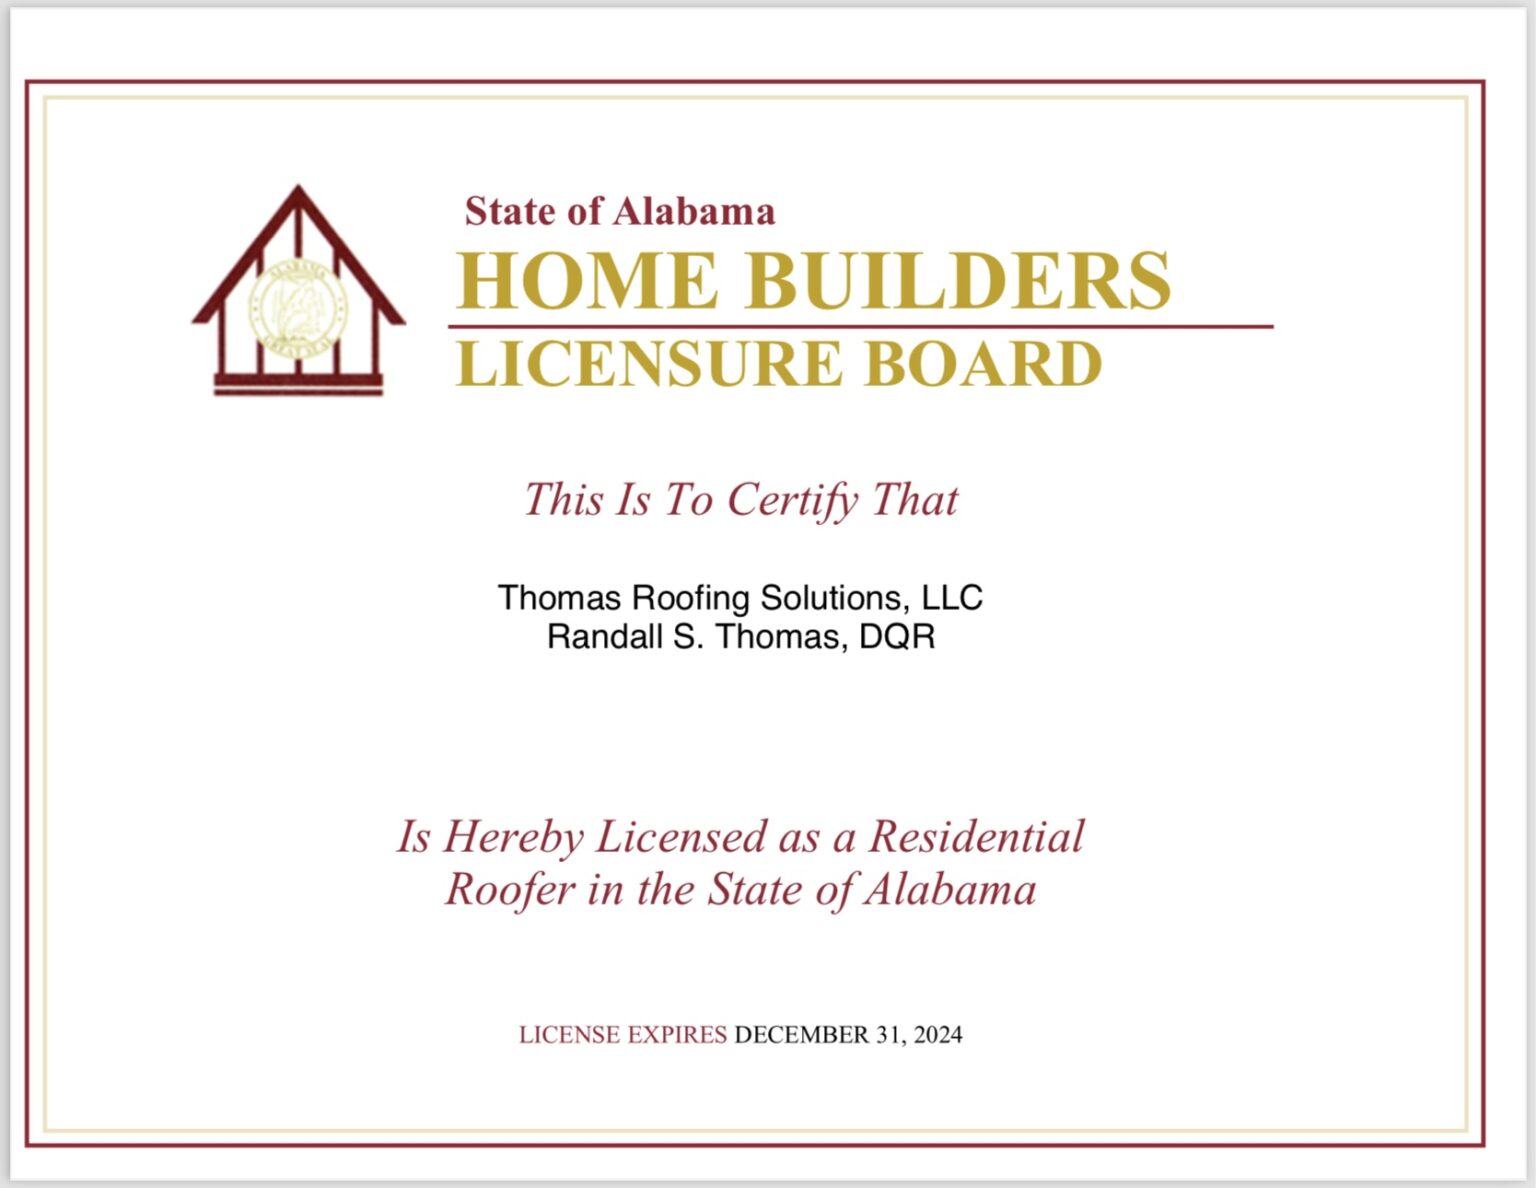 Thomas Roofing Homebuilders Licensure Board Certificate Atlanta